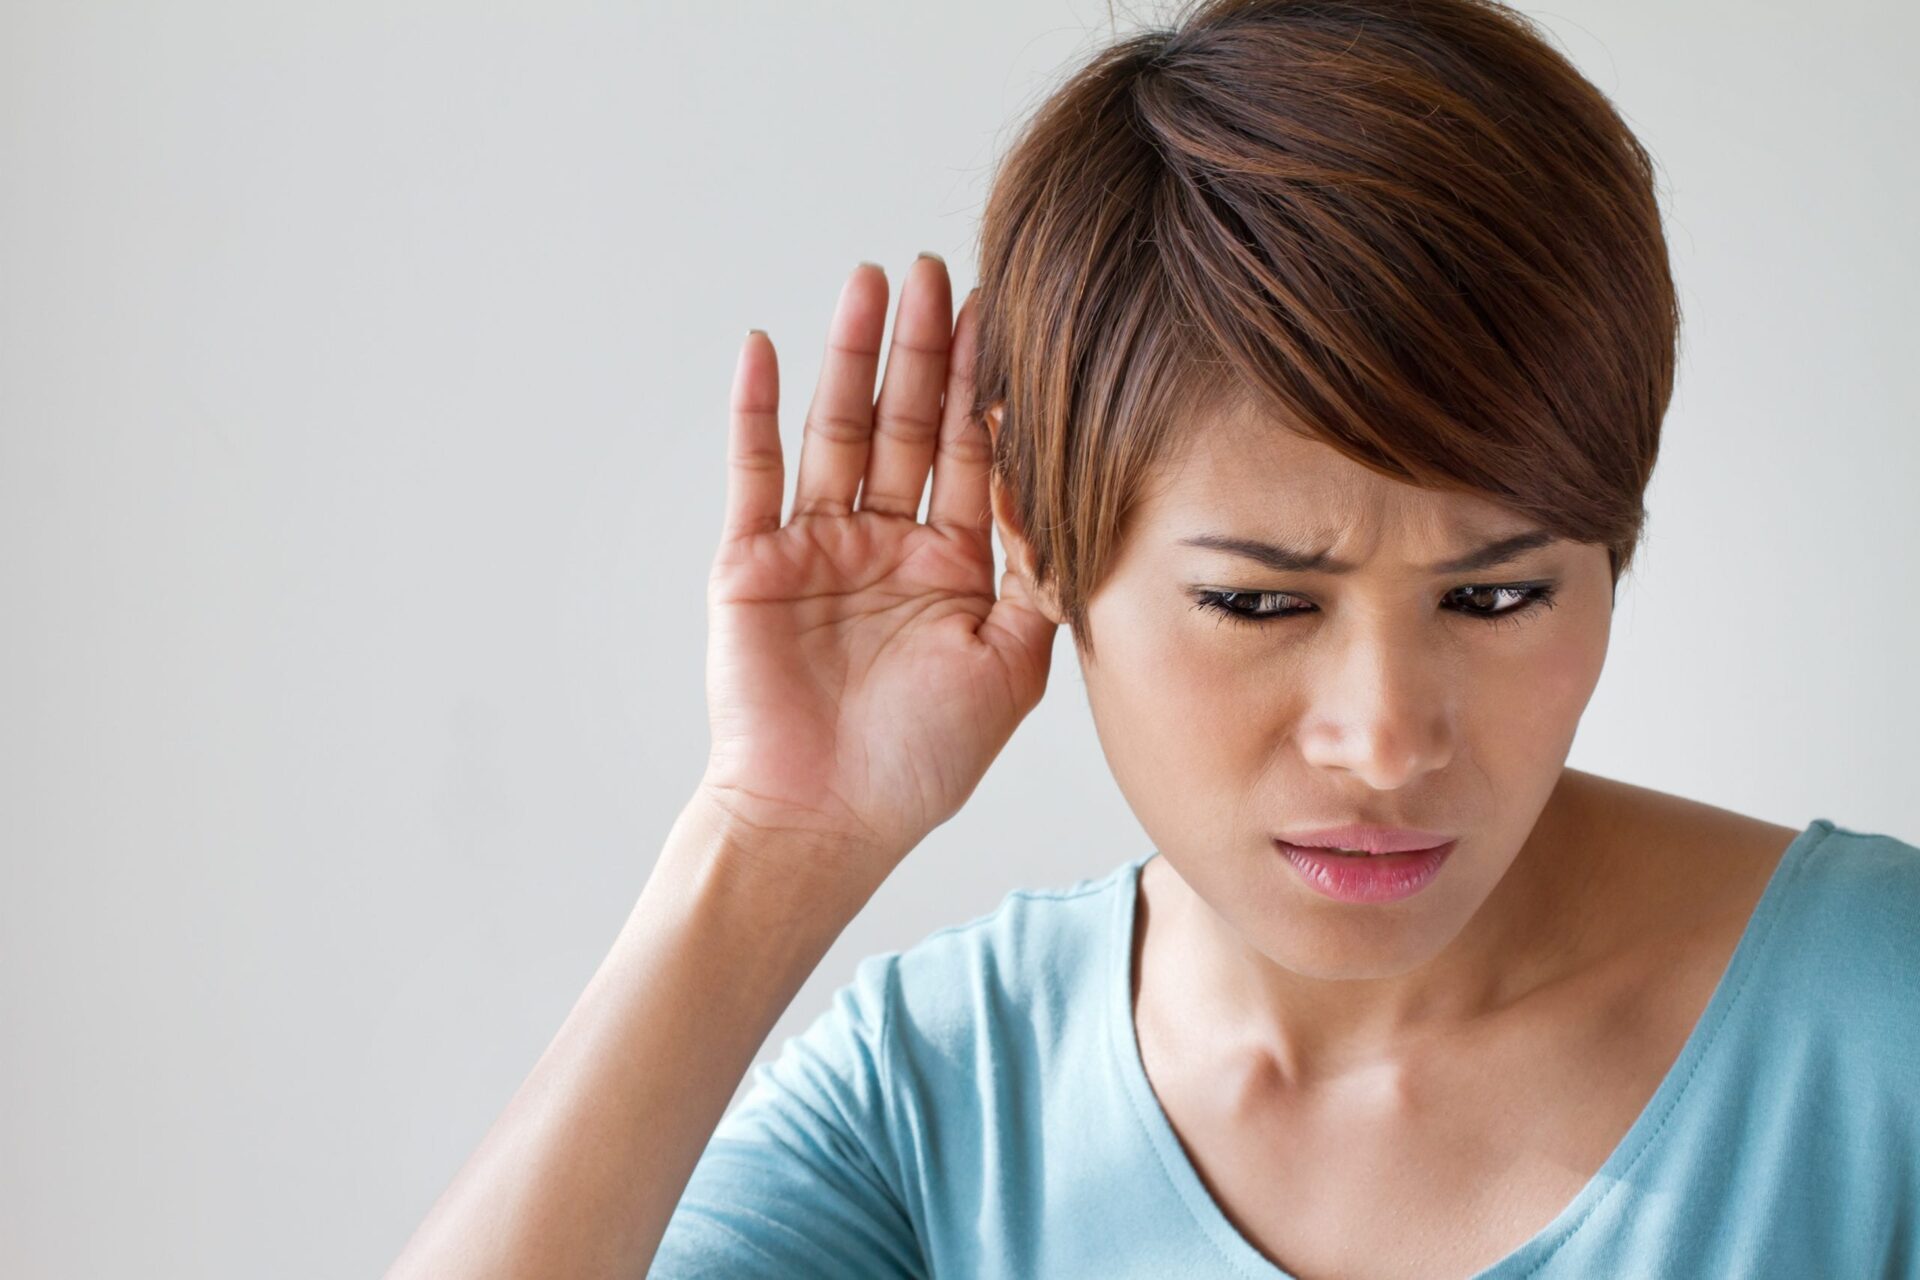 Đeo tai nghe nhiều có những ảnh hưởng tiêu cực ra sao? Sau đây là câu trả lời cho bạn - ảnh 4